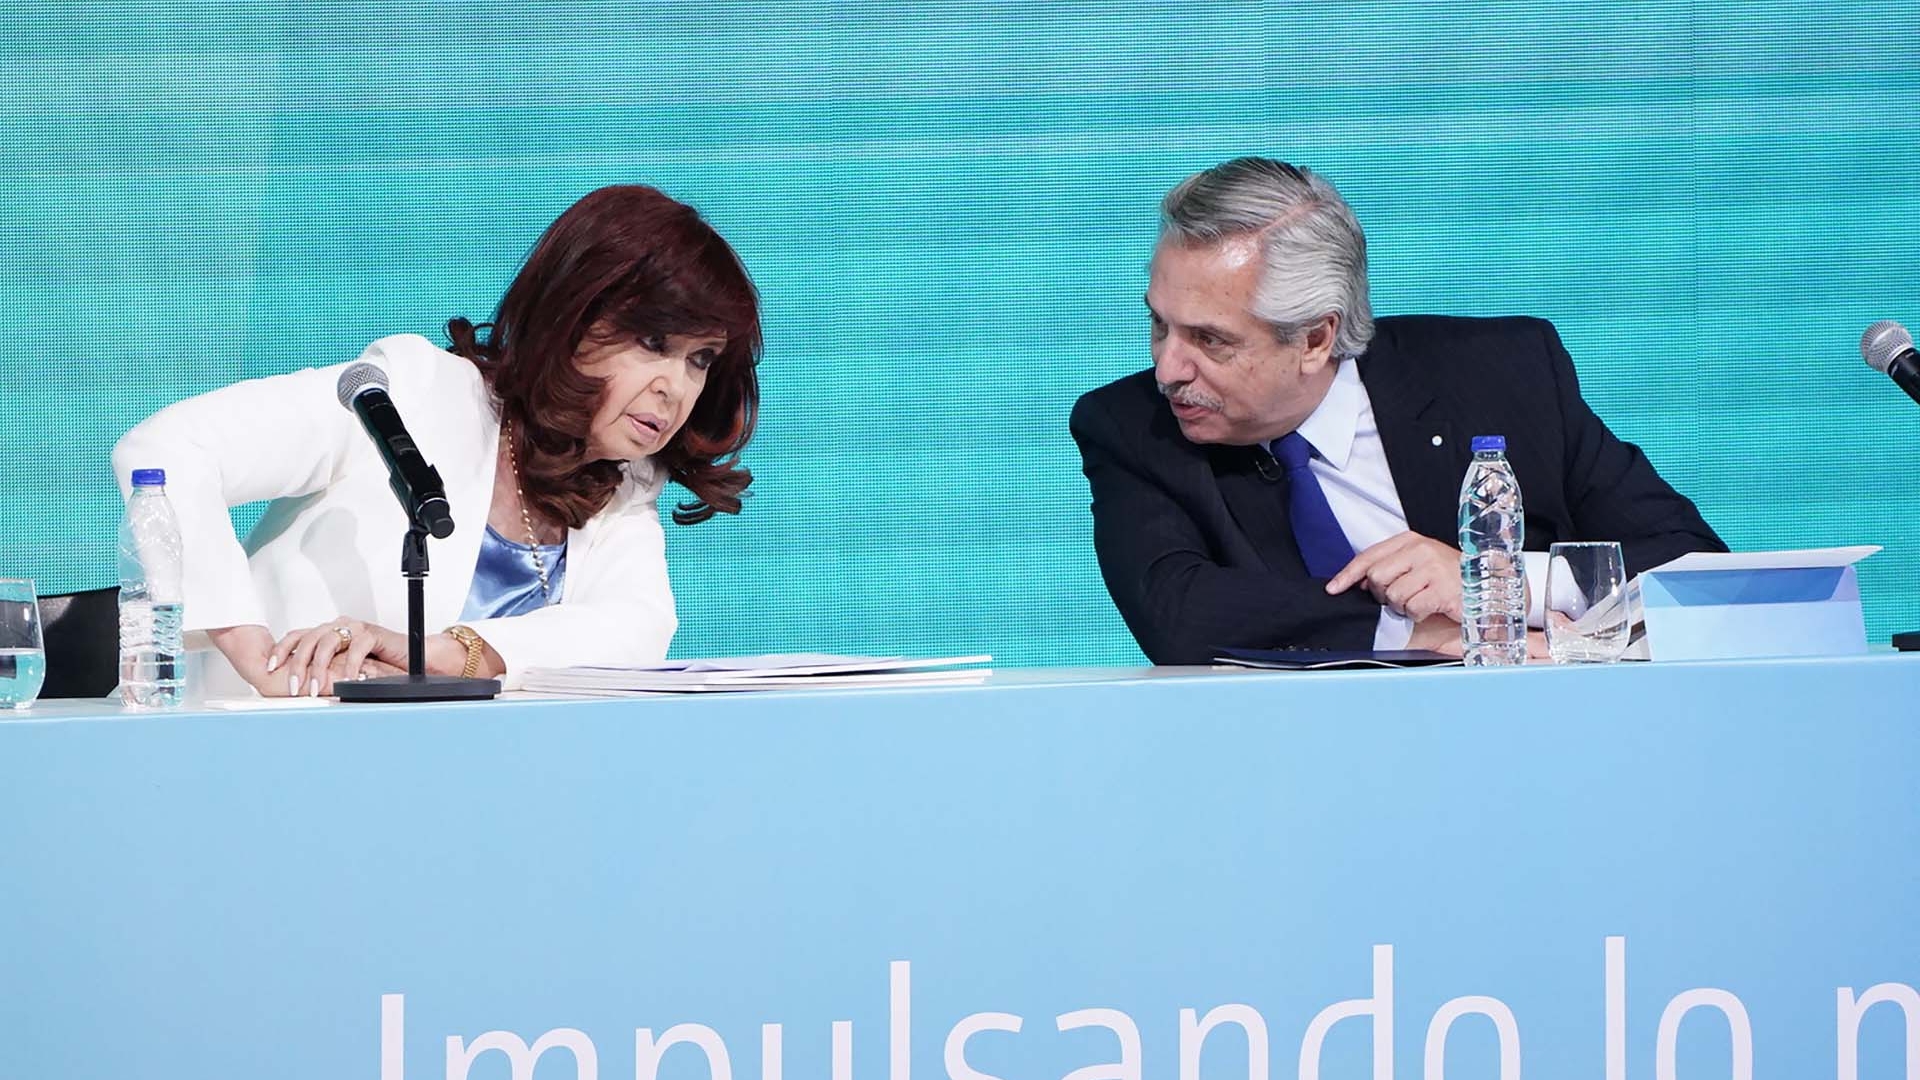 El jefe de Estado aseguró que tiene diferencias con Cristina Fernández de Kirchner pero que están "juntos" (Foto: Franco Fafasuli)